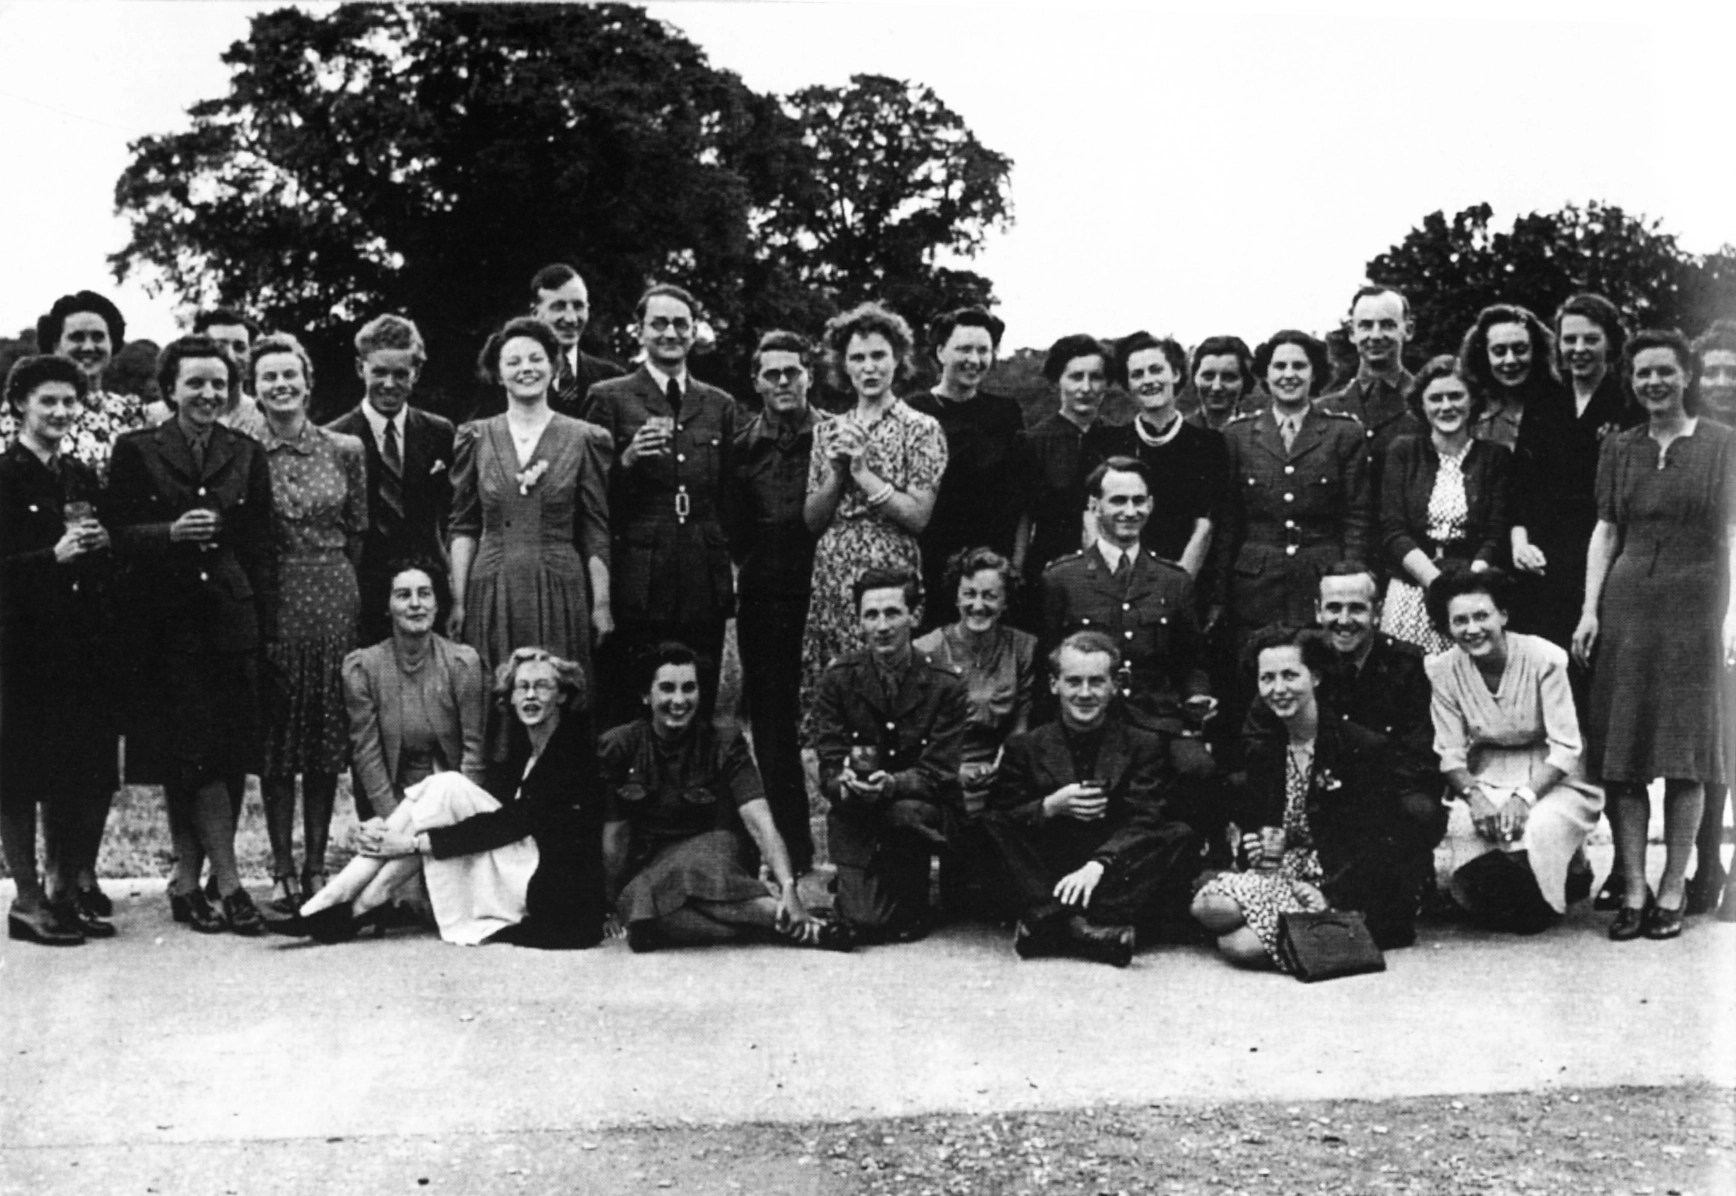 A VE Day celebration at Bletchley Park in 1945